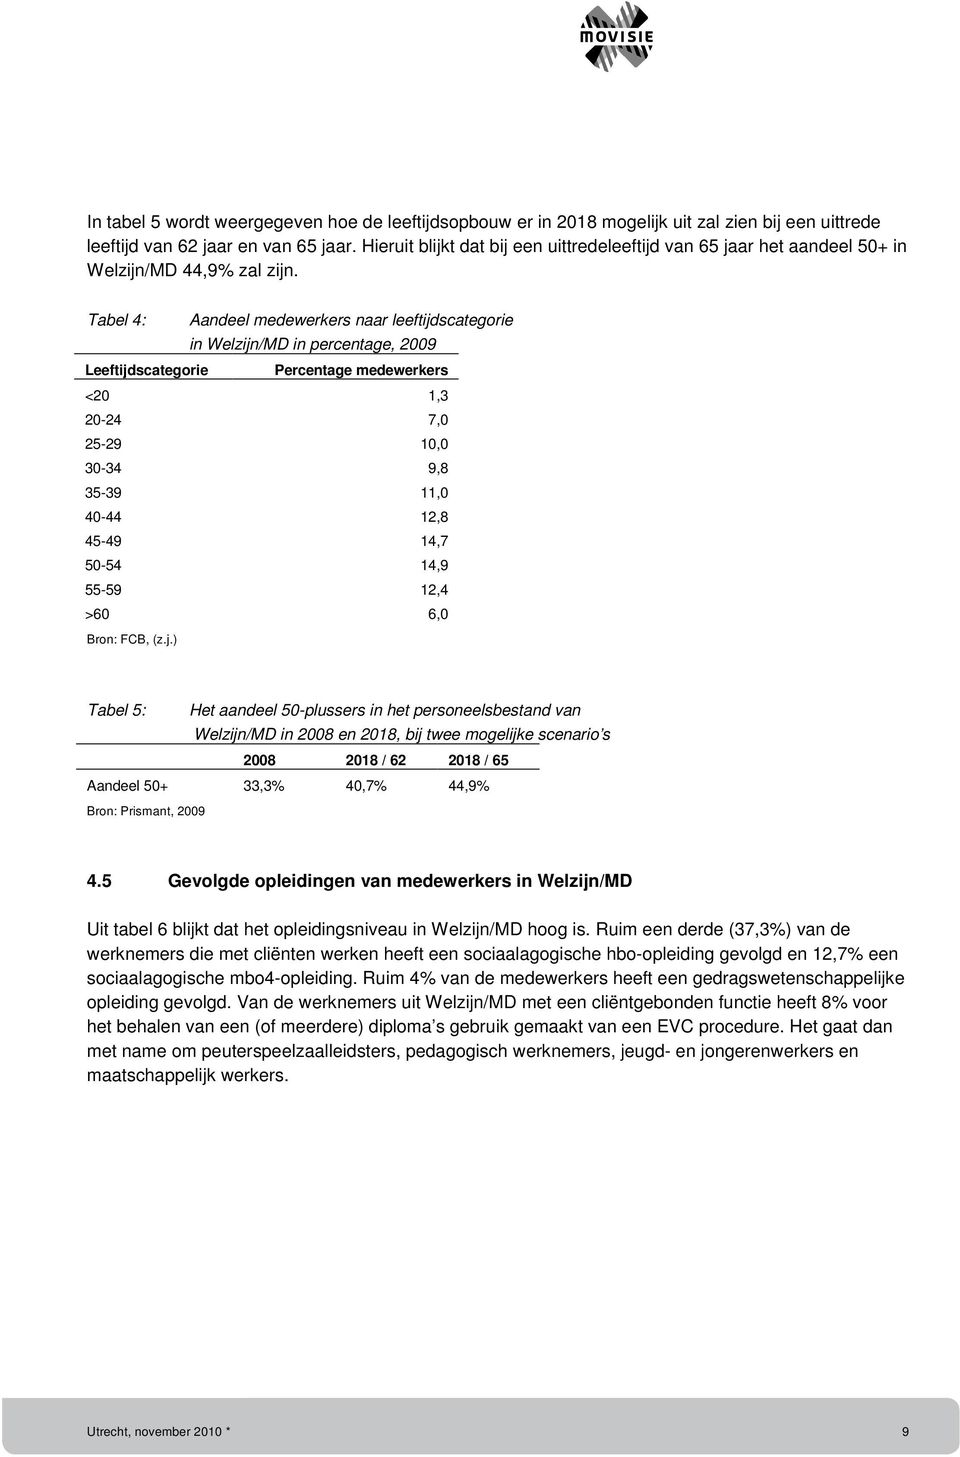 Tabel 4: Aandeel medewerkers naar leeftijdscategorie in Welzijn/MD in percentage, 2009 Leeftijdscategorie Percentage medewerkers <20 1,3 20-24 7,0 25-29 10,0 30-34 9,8 35-39 11,0 40-44 12,8 45-49